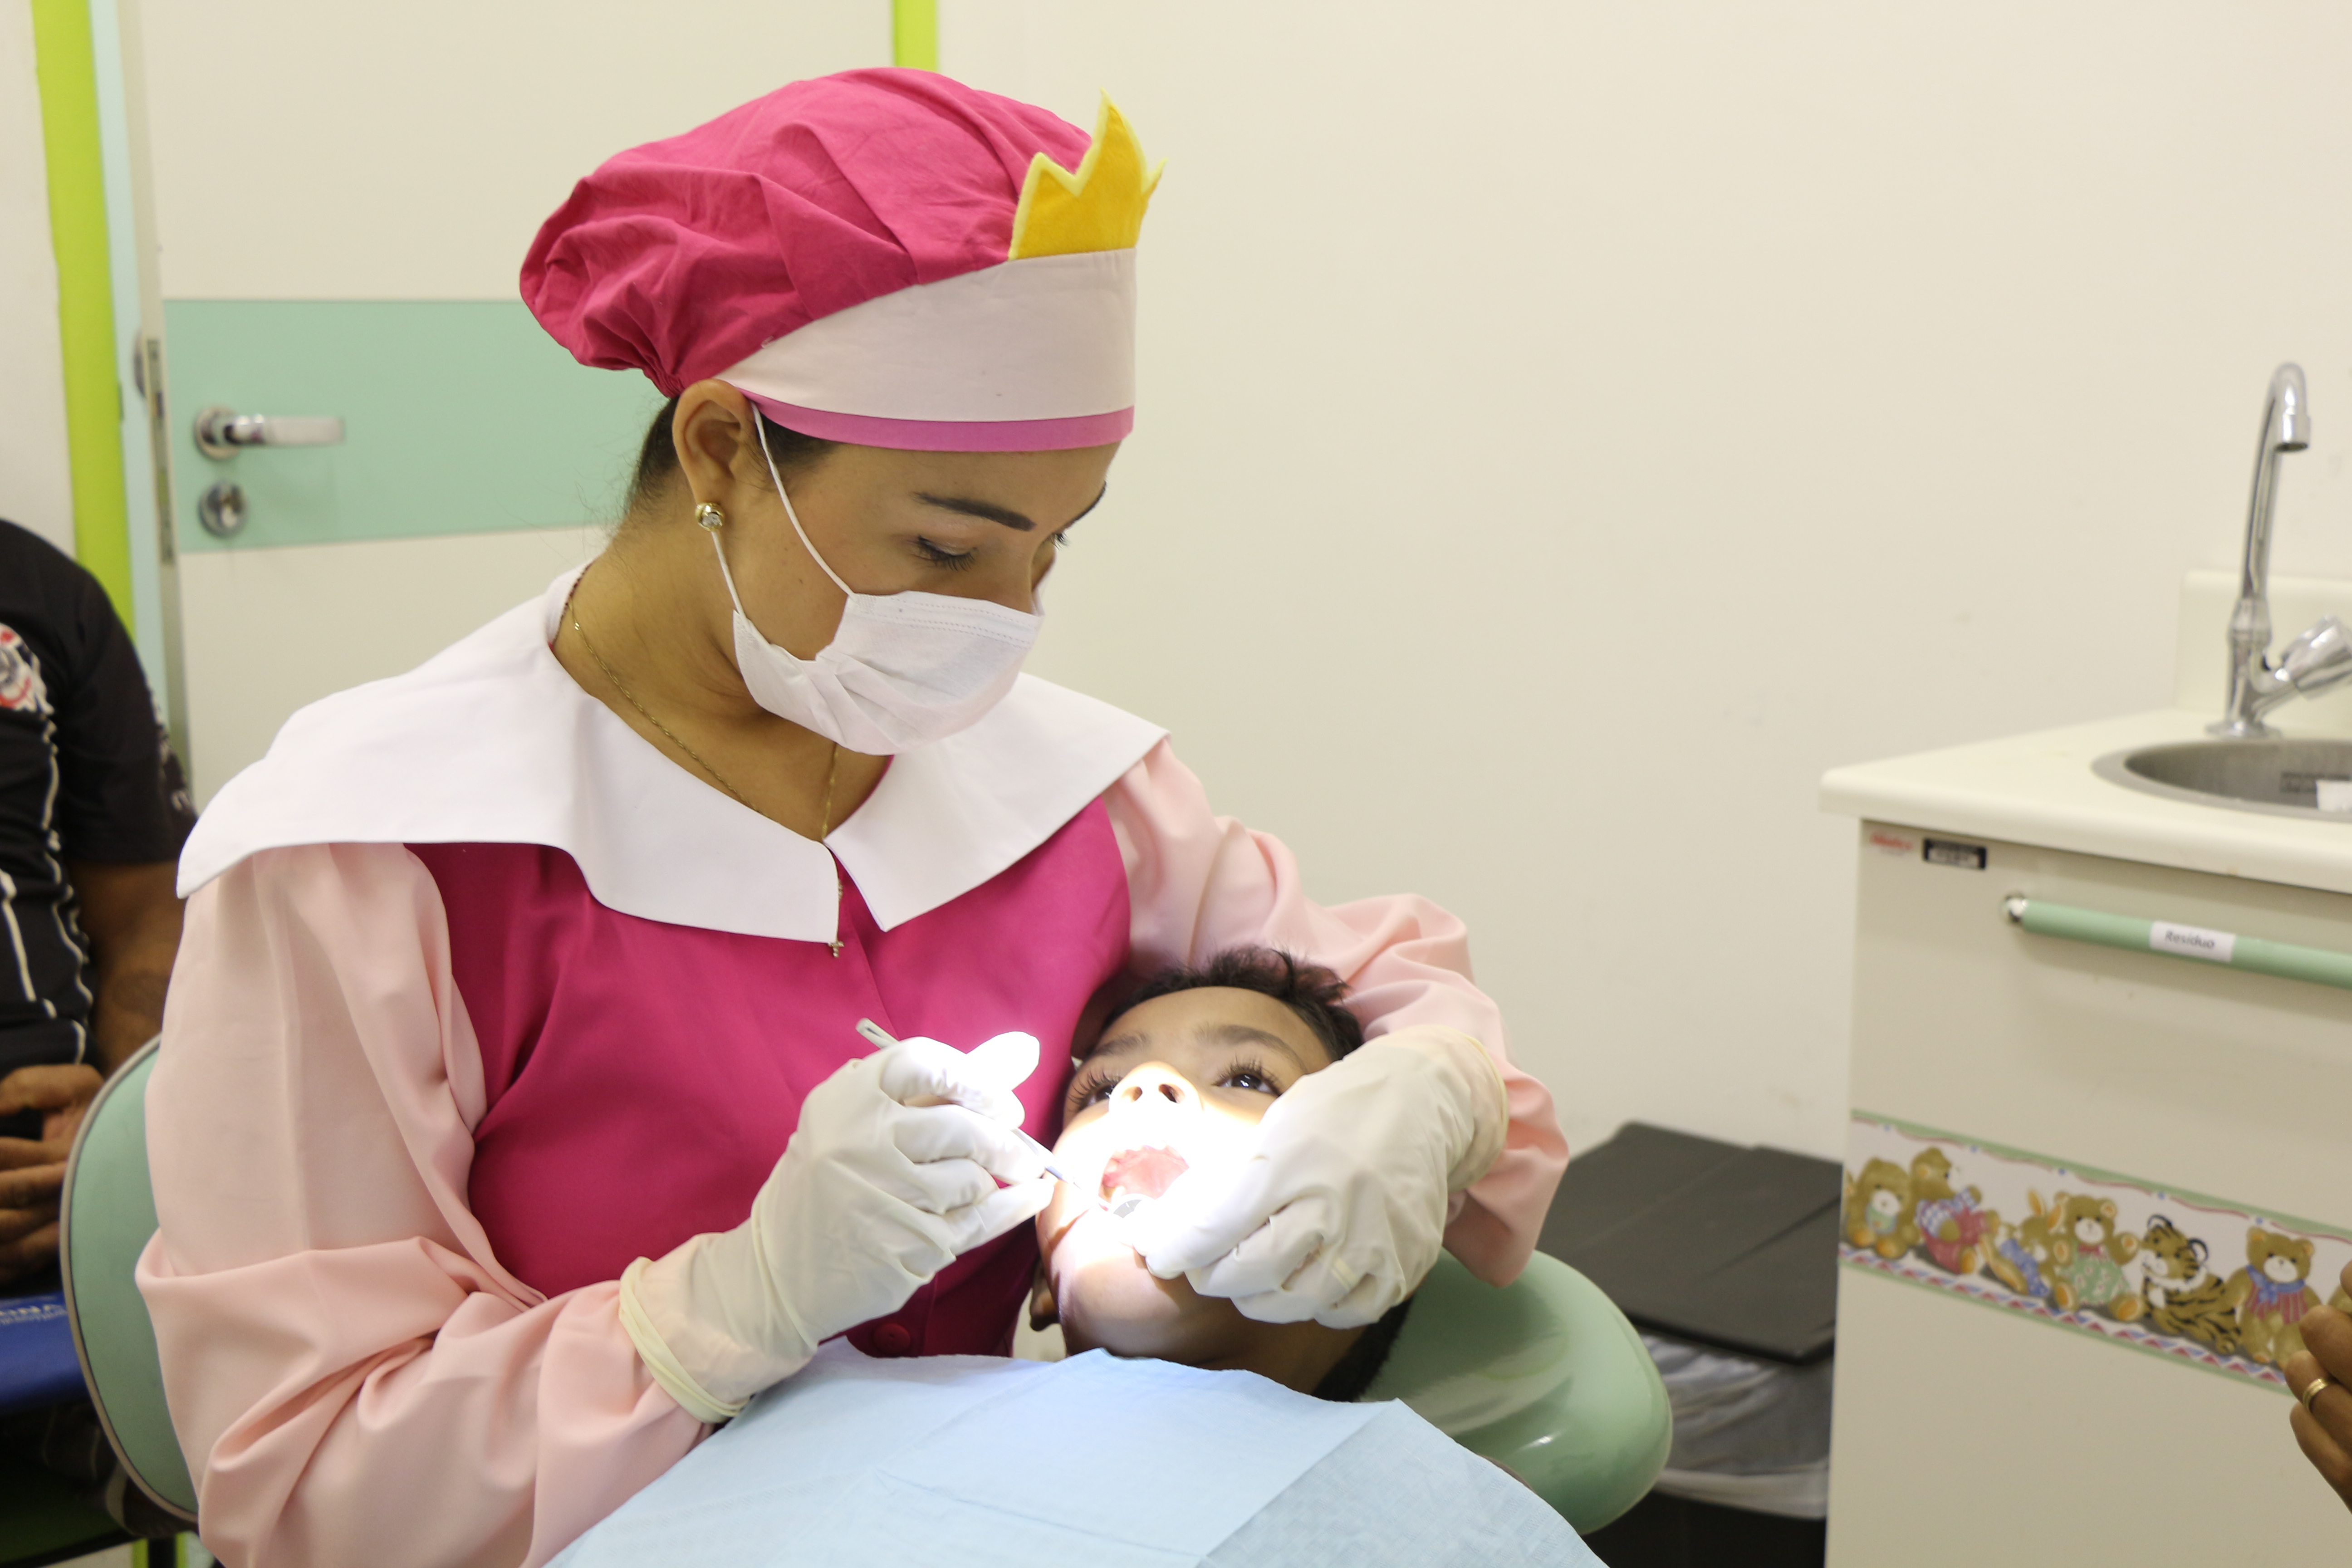 Centro de Odontologia atende 800 crianças